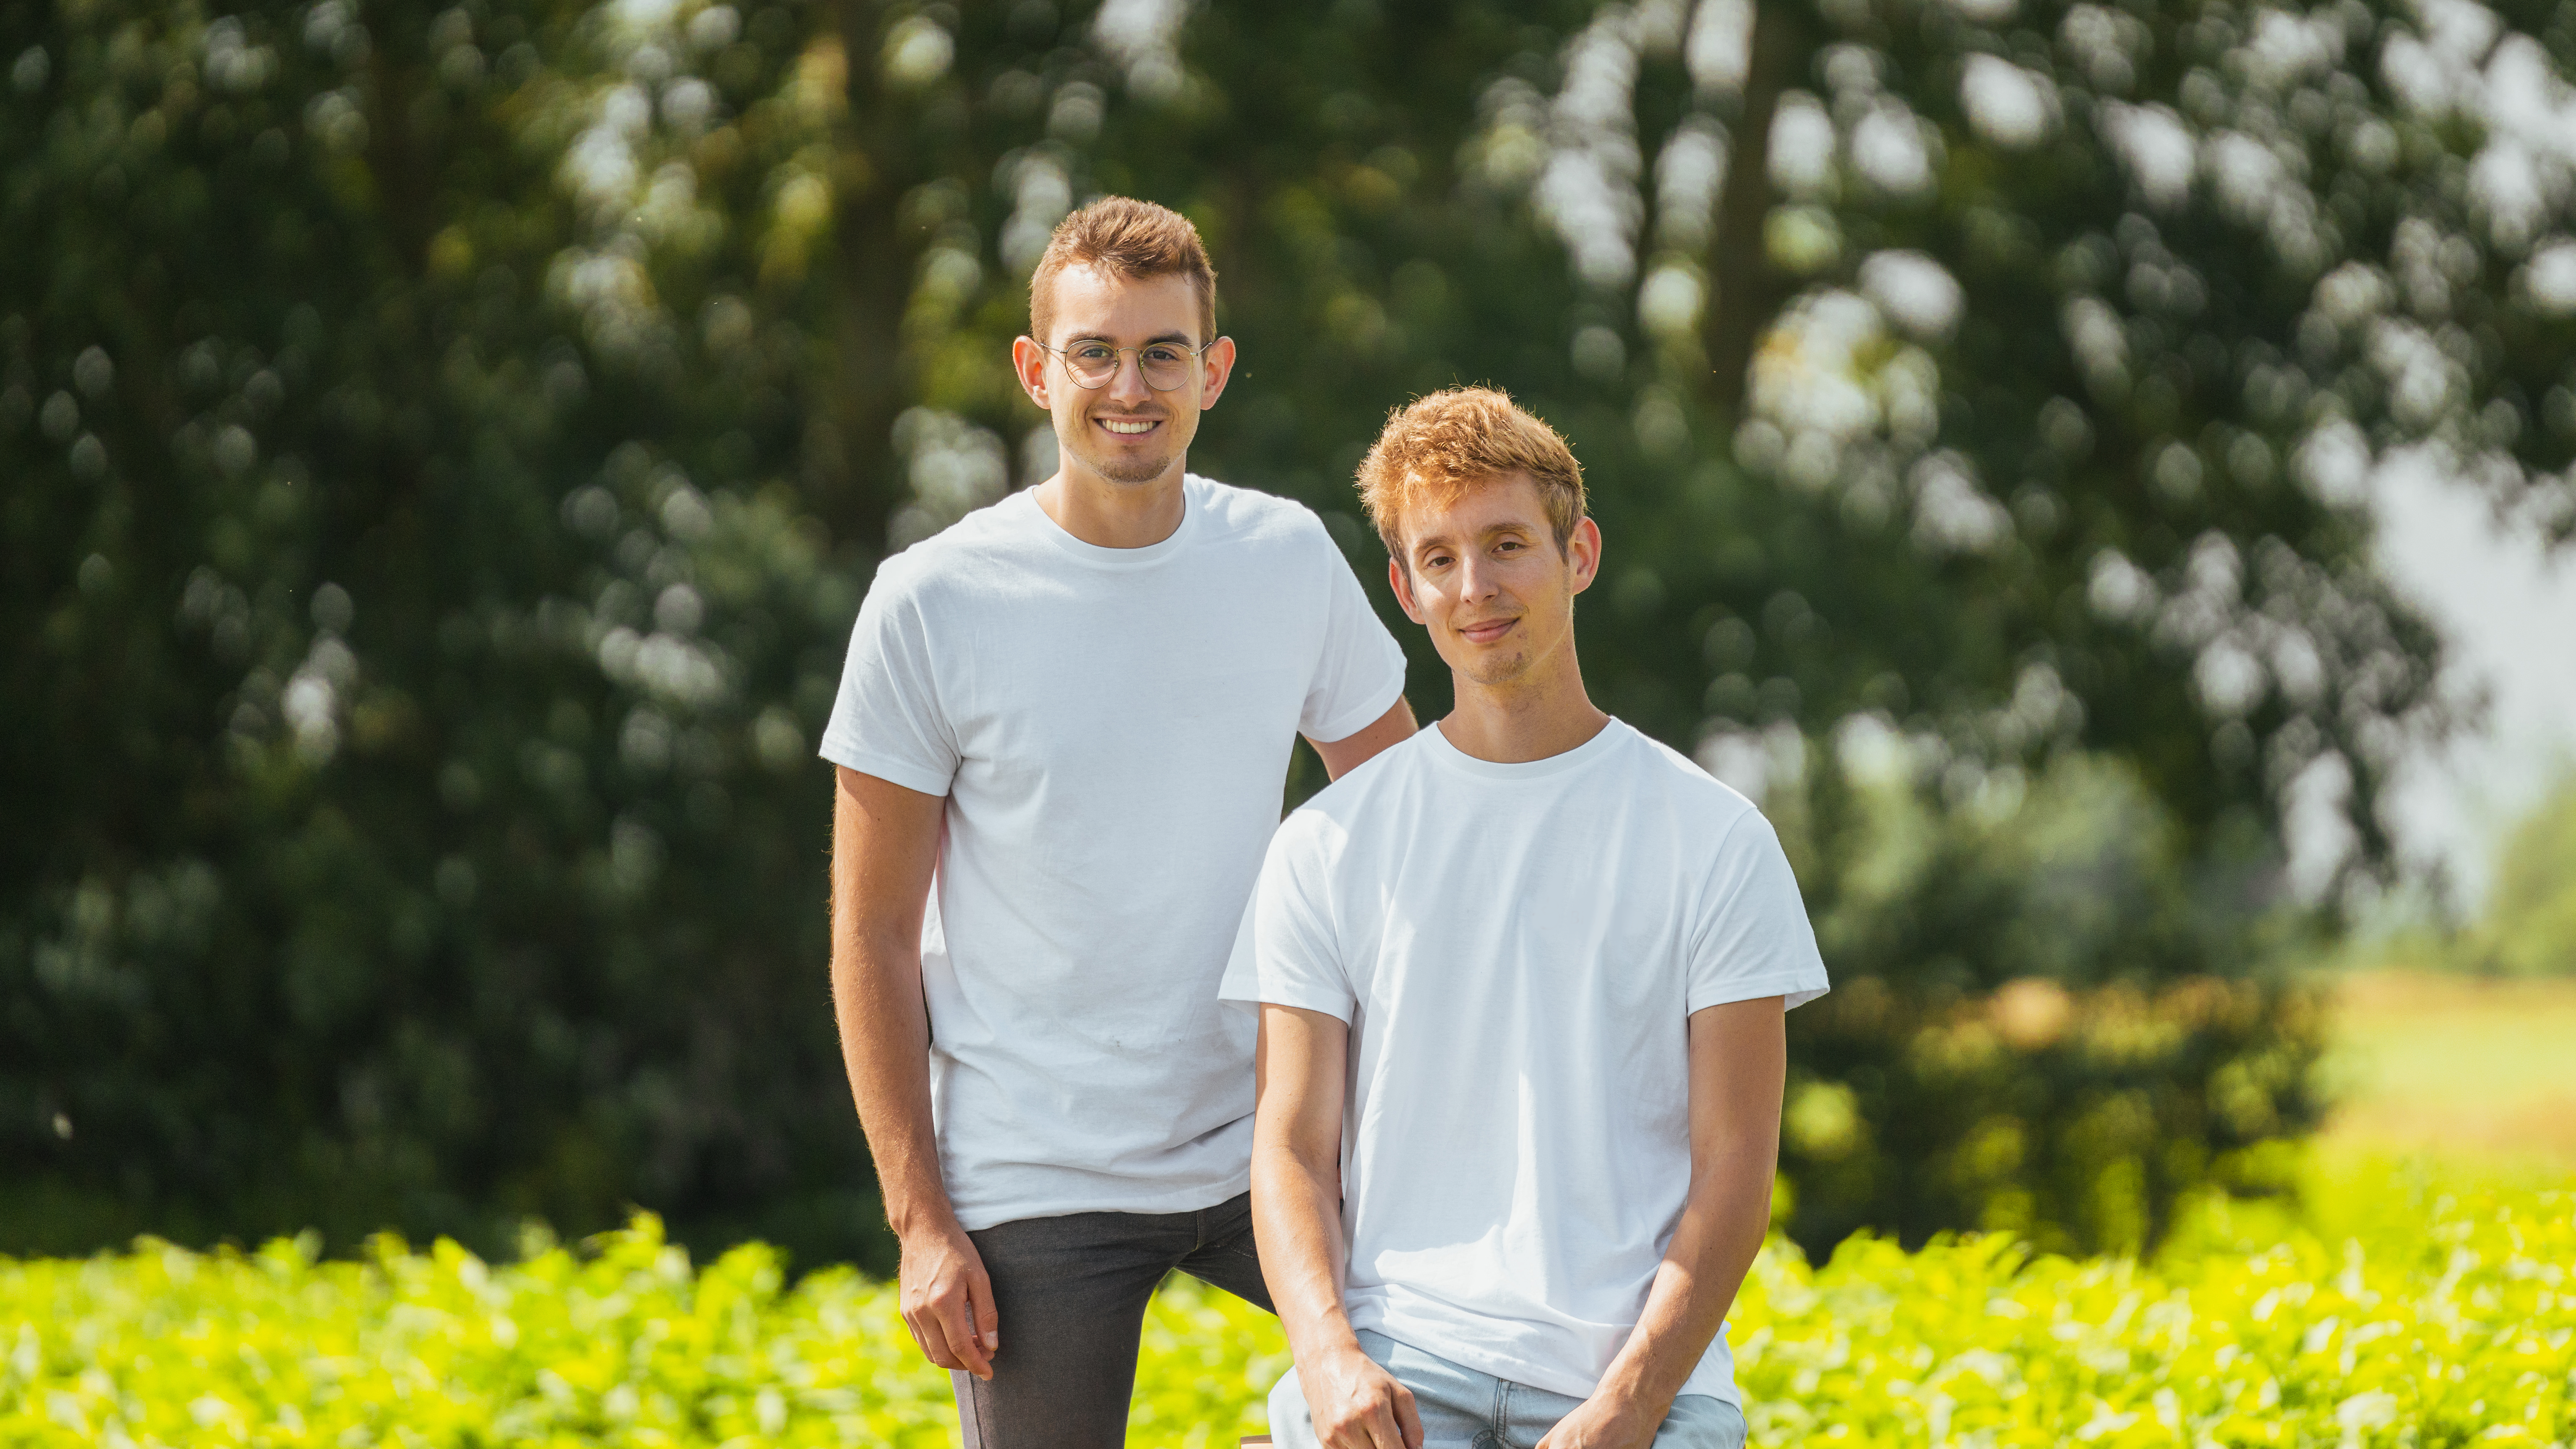 Maxime et Stéphane, co-fondateur de Pour Demain, une startup qui aide les agriculteurs en conversion bio à mettre en avant leur produit à un "juste prix". Maxime Durand